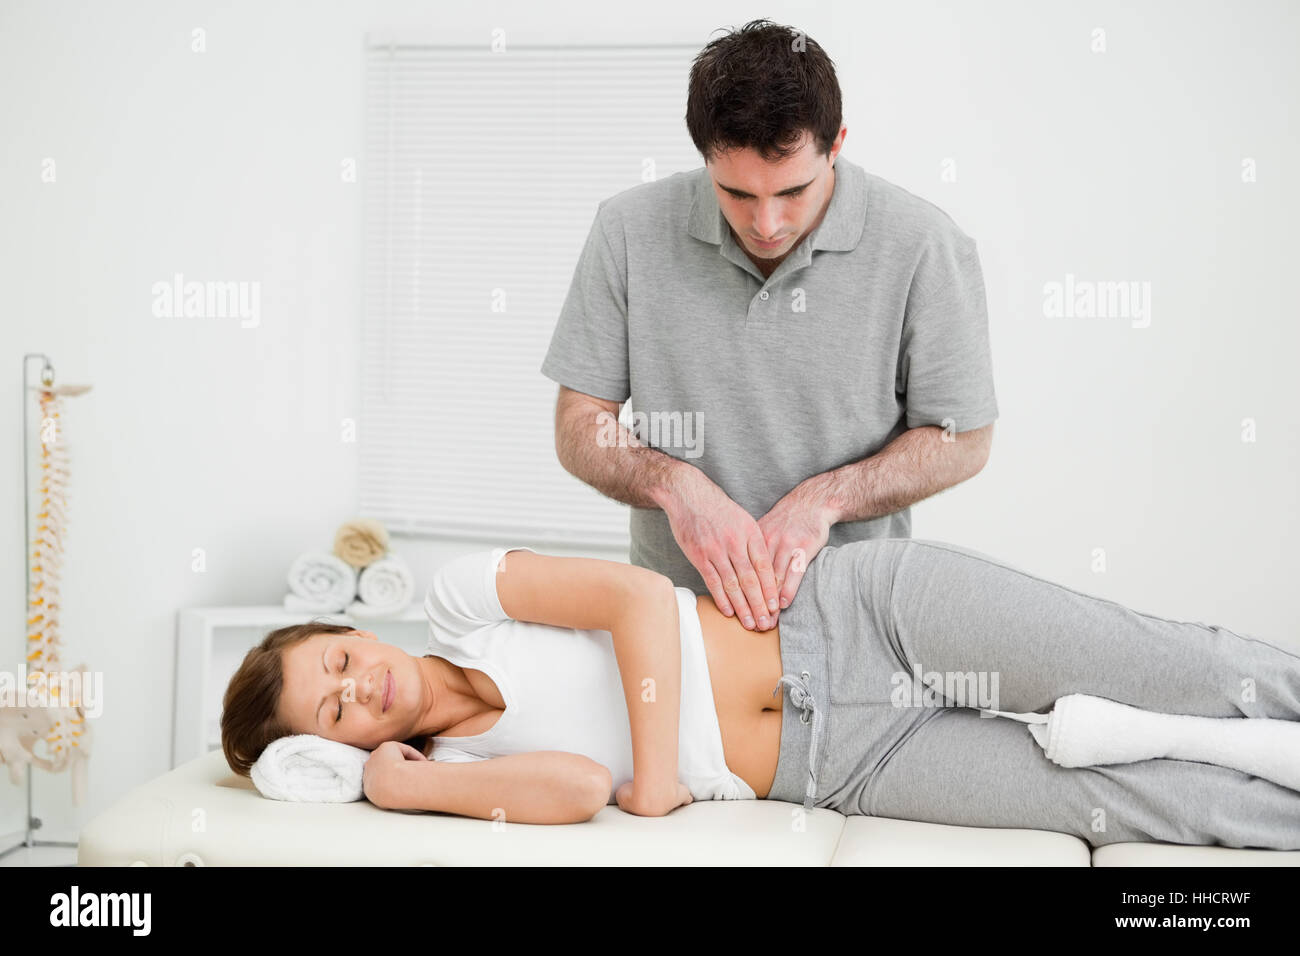 Ruhige Frau, die an ihrer Hüfte von einem Arzt in einem medizinischen Raum massiert Stockfoto